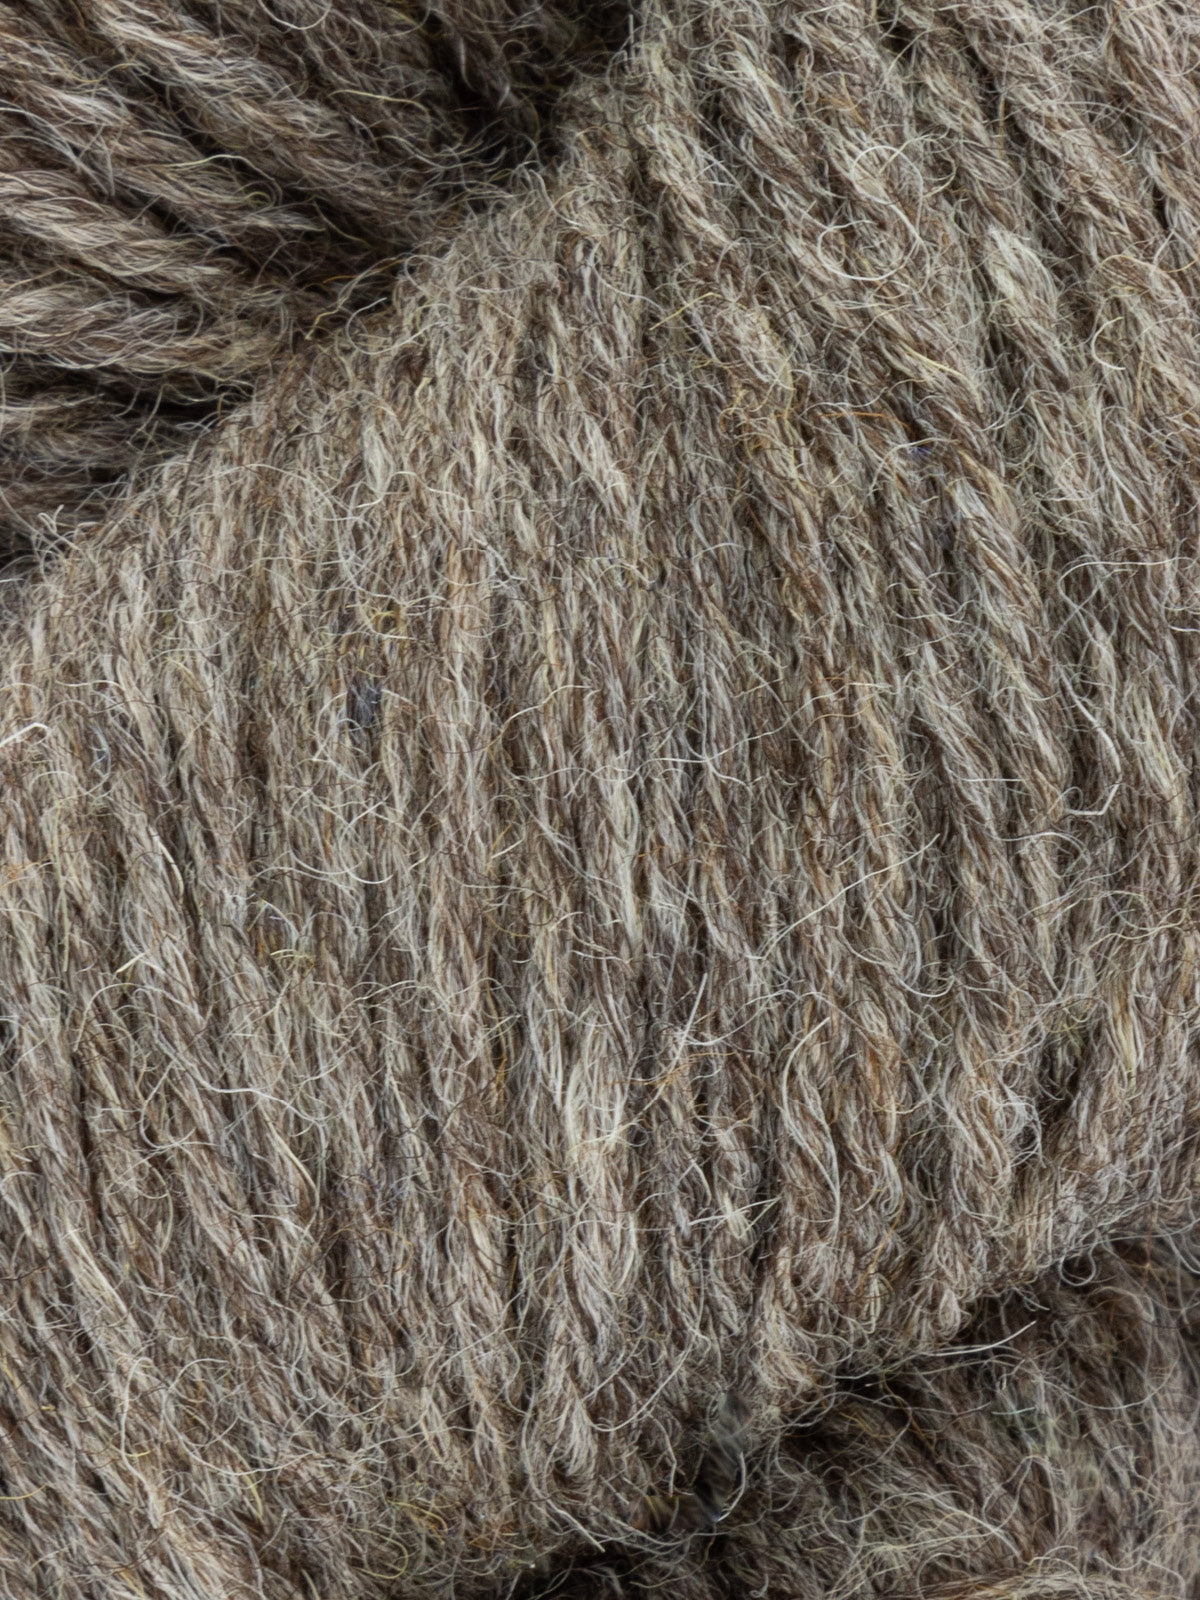 West Yorkshire Spinners Fleece - Aran weight – closeknitportland